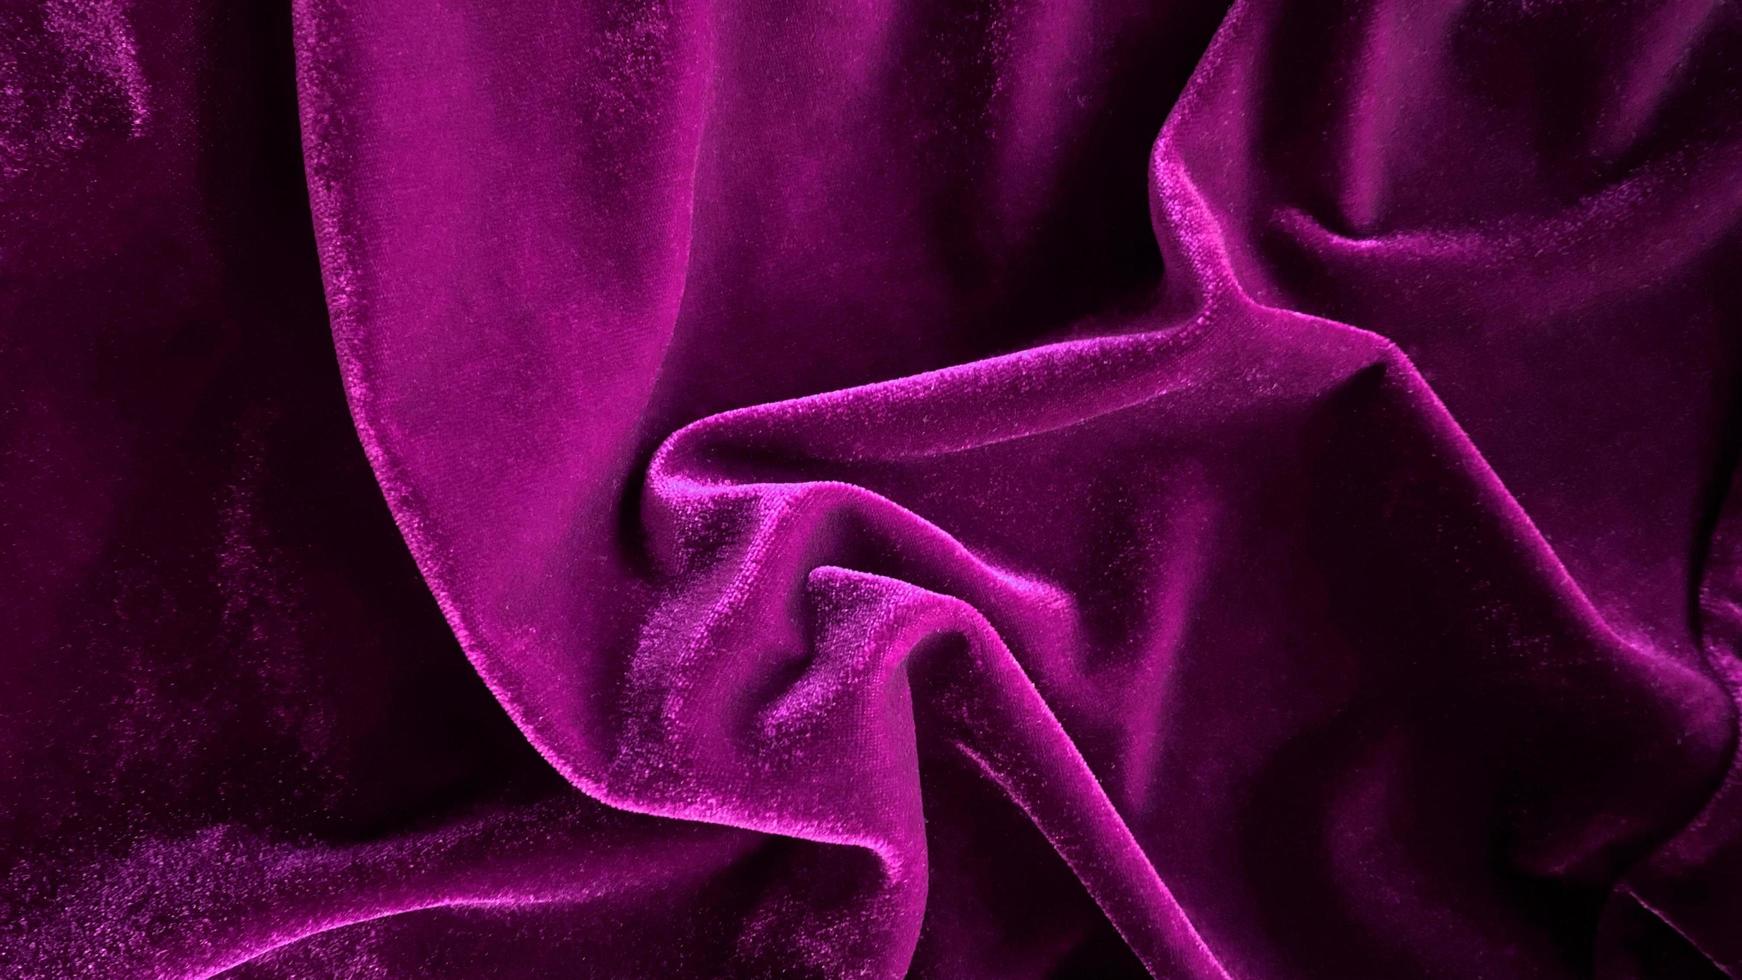 textura de tecido de veludo roxo magenta usada como plano de fundo. fundo de tecido roxo vazio de material têxtil macio e liso. há espaço para o texto. foto